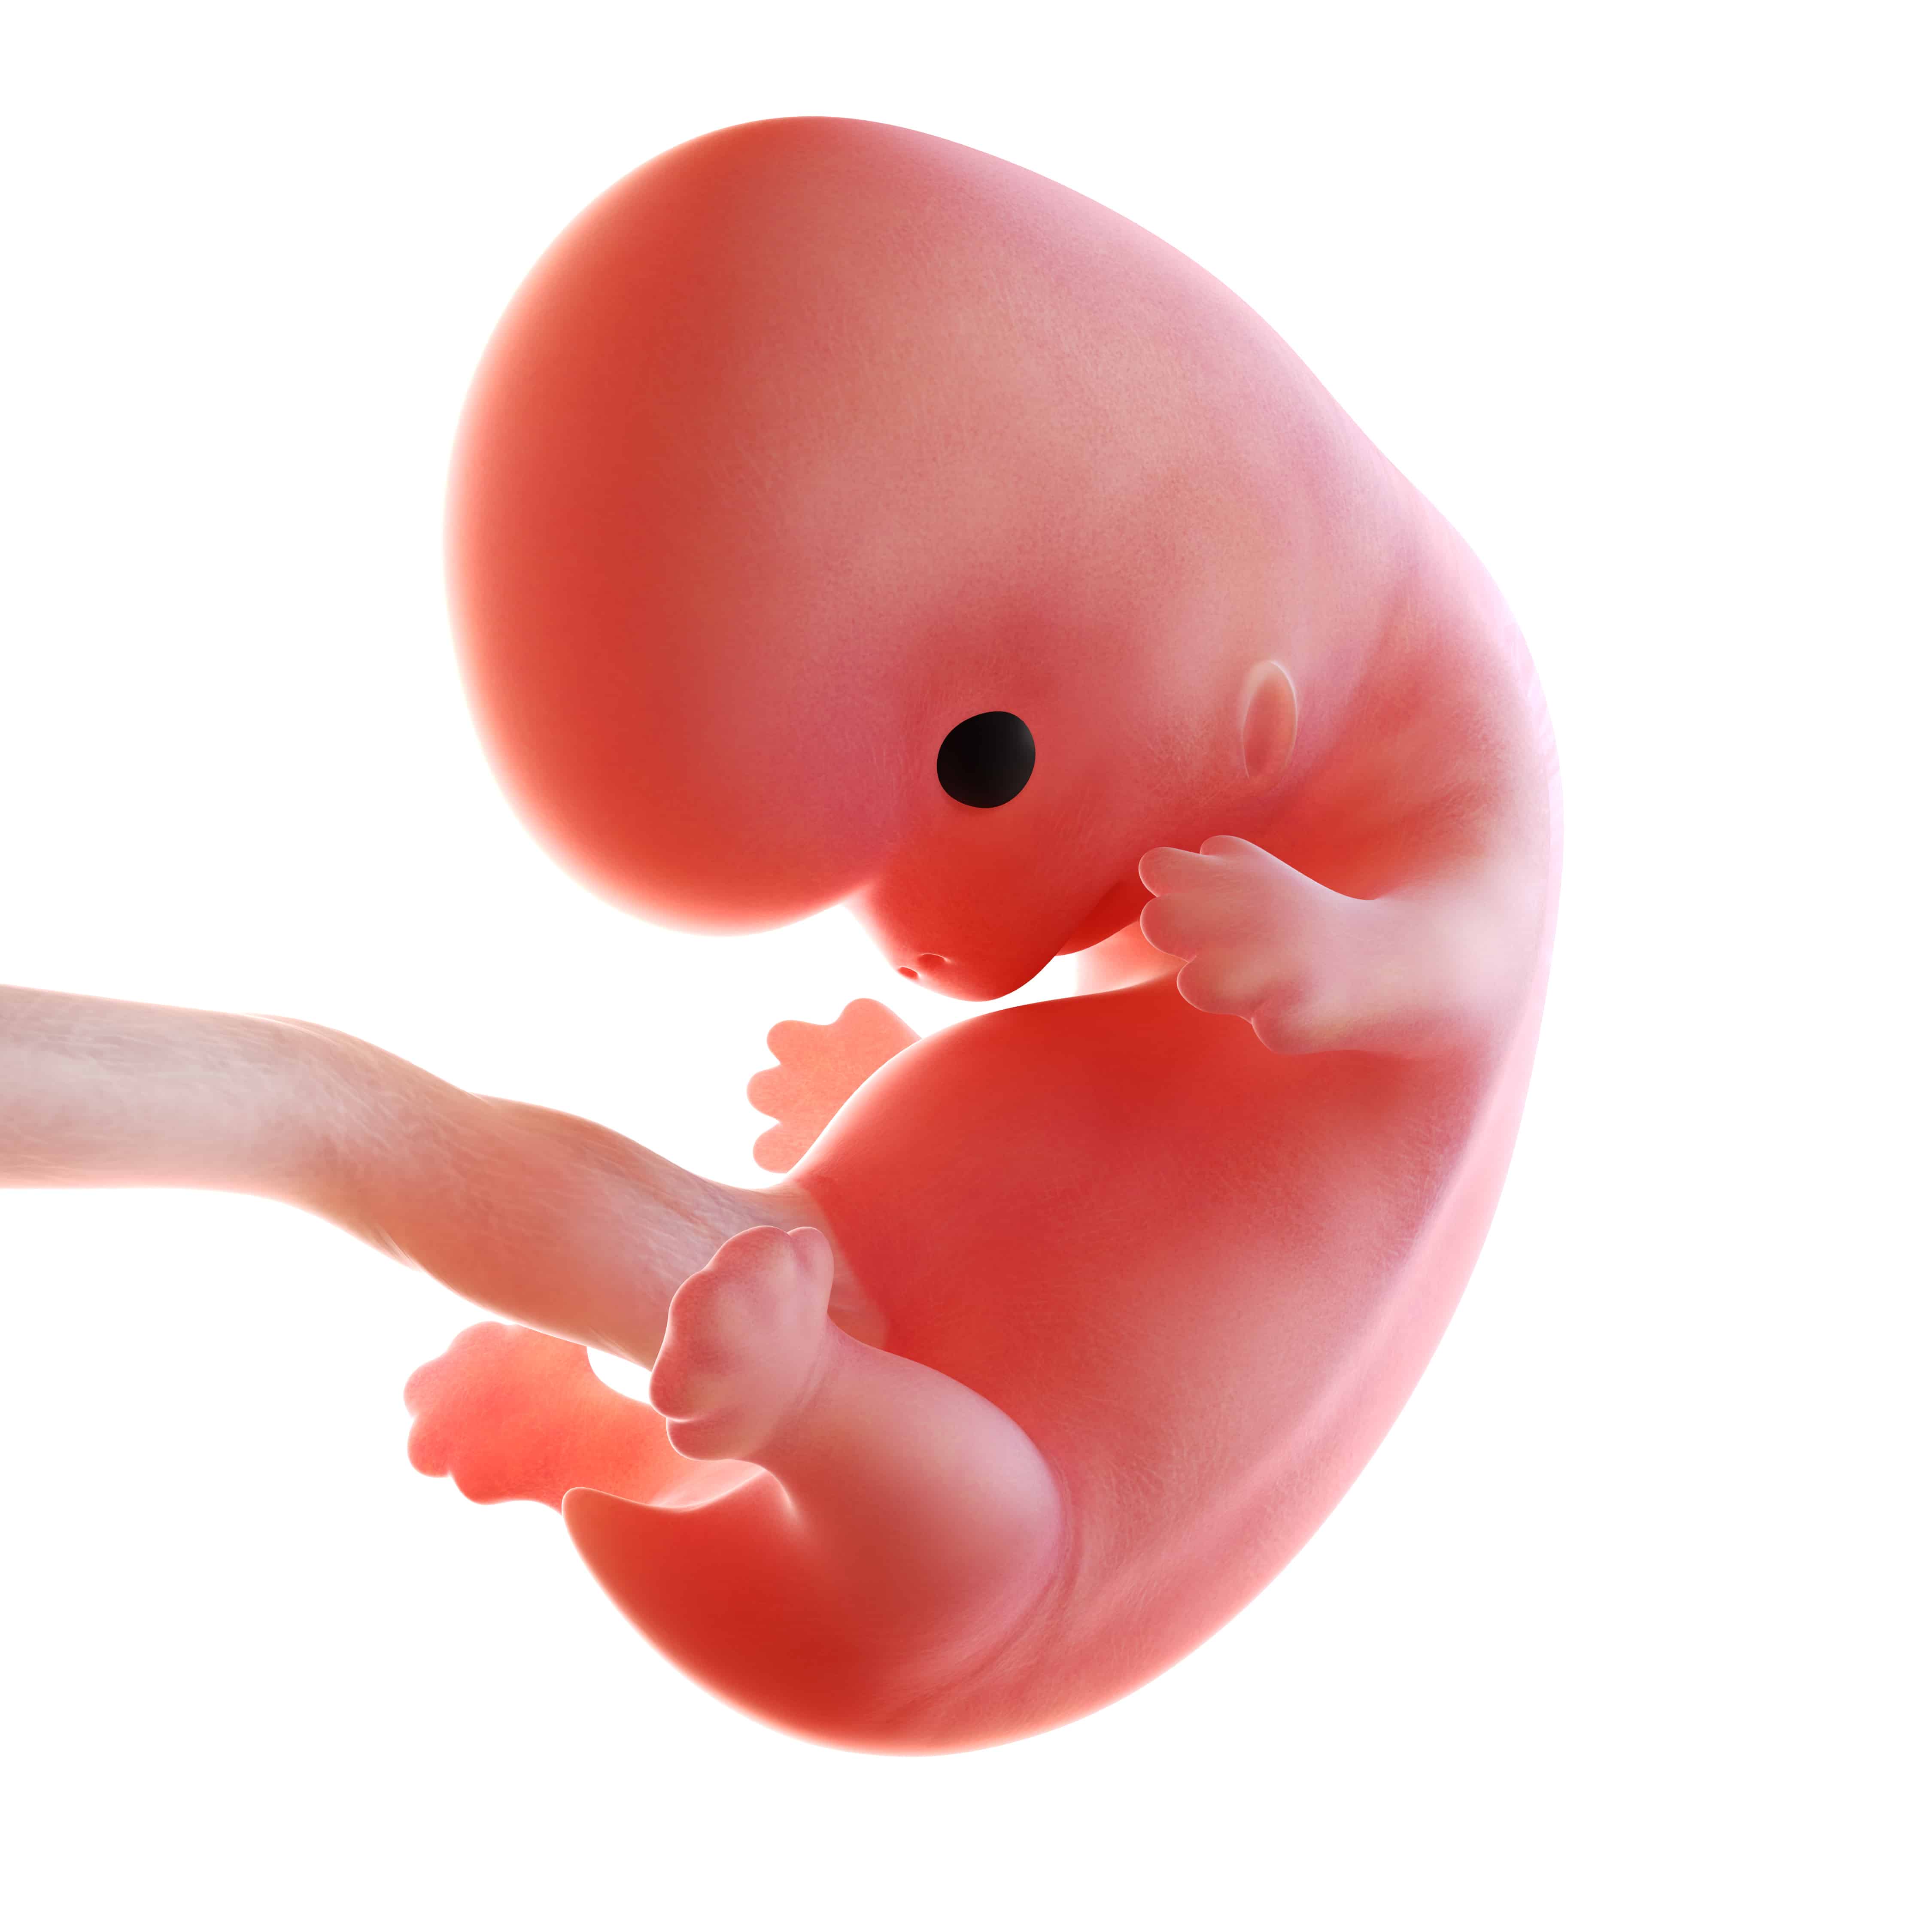 8 й недели неделе. Зародыш на 8 неделе беременности. 8 Недель беременности Эмбрио. Плод 7-8 недель беременности. 8 Недель беременности фото эмбриона.